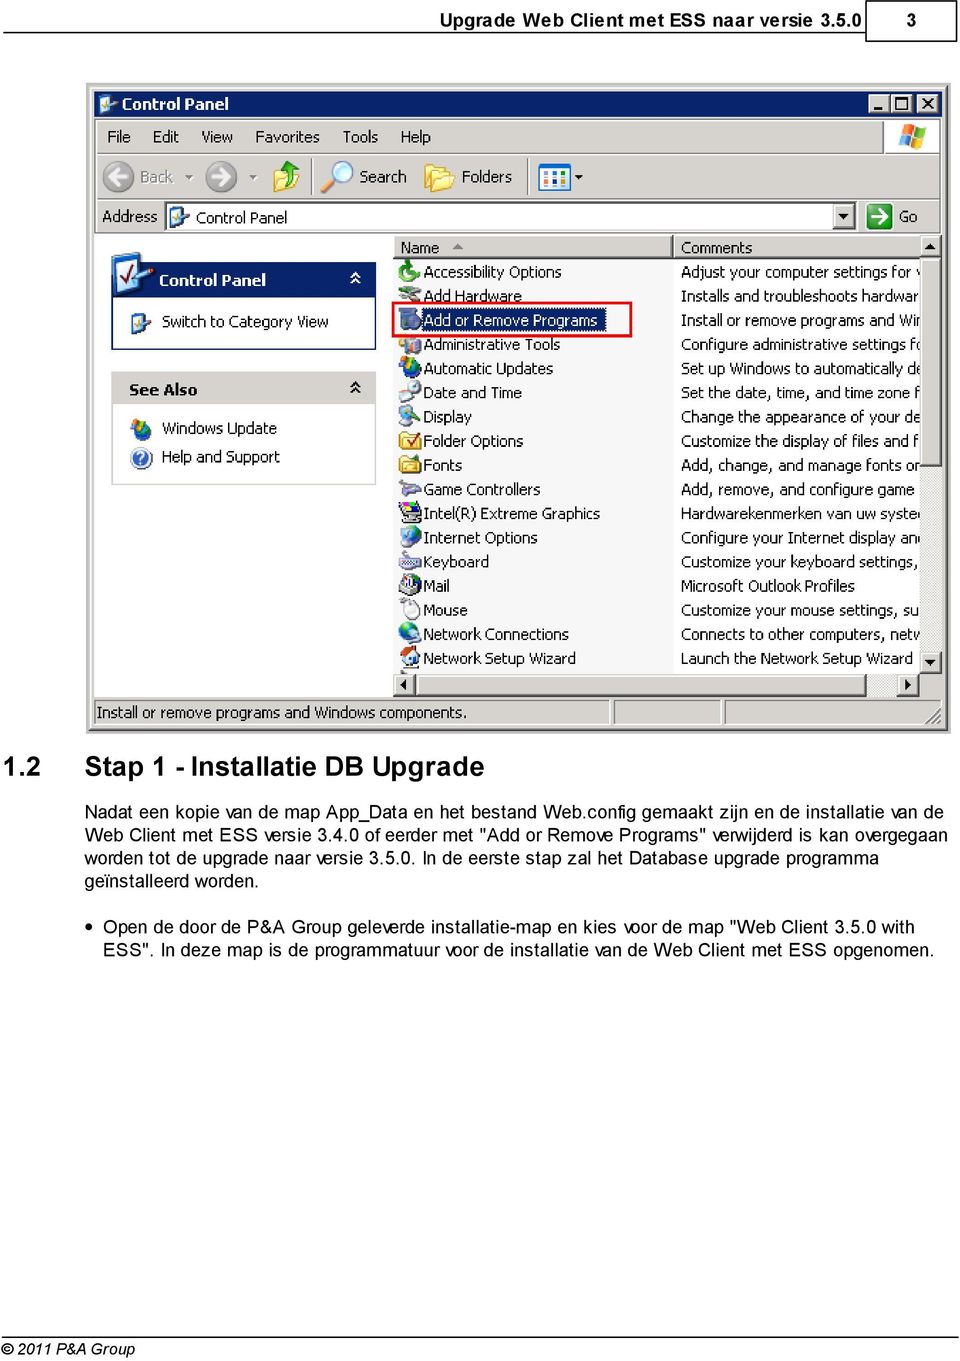 0 of eerder met "Add or Remove Programs" verwijderd is kan overgegaan worden tot de upgrade naar versie 3.5.0. In de eerste stap zal het Database upgrade programma geïnstalleerd worden.